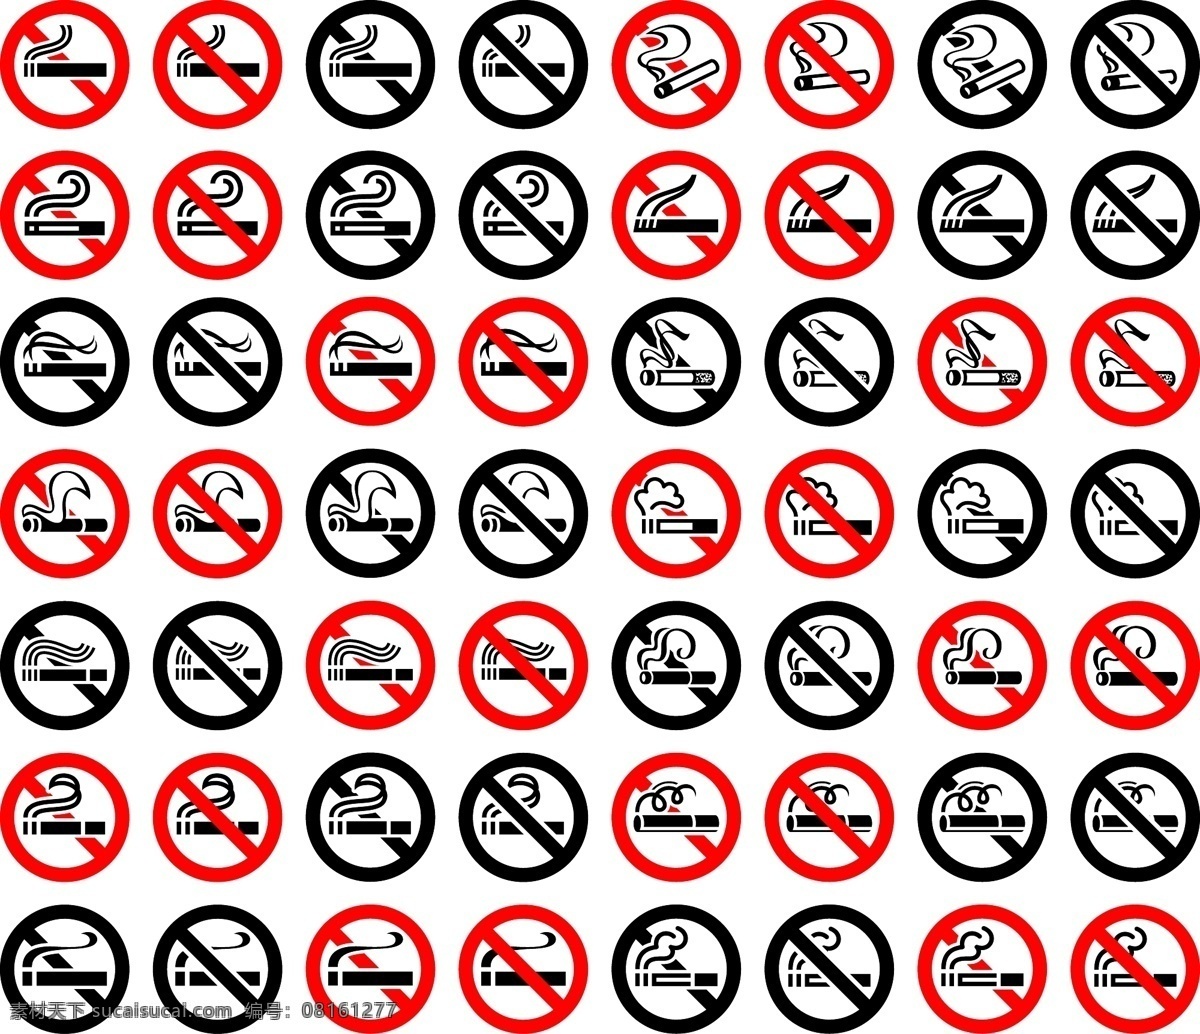 禁止吸烟 禁止吸烟海报 禁止吸烟宣传 禁止吸烟展板 no smoking 禁止吸烟标语 禁止吸烟口号 禁烟 禁烟海报 禁止吸烟标志 请勿吸烟 禁止抽烟 禁止 吸烟 戒烟 无烟日 禁止吸烟图标 标志图标 公共标识标志